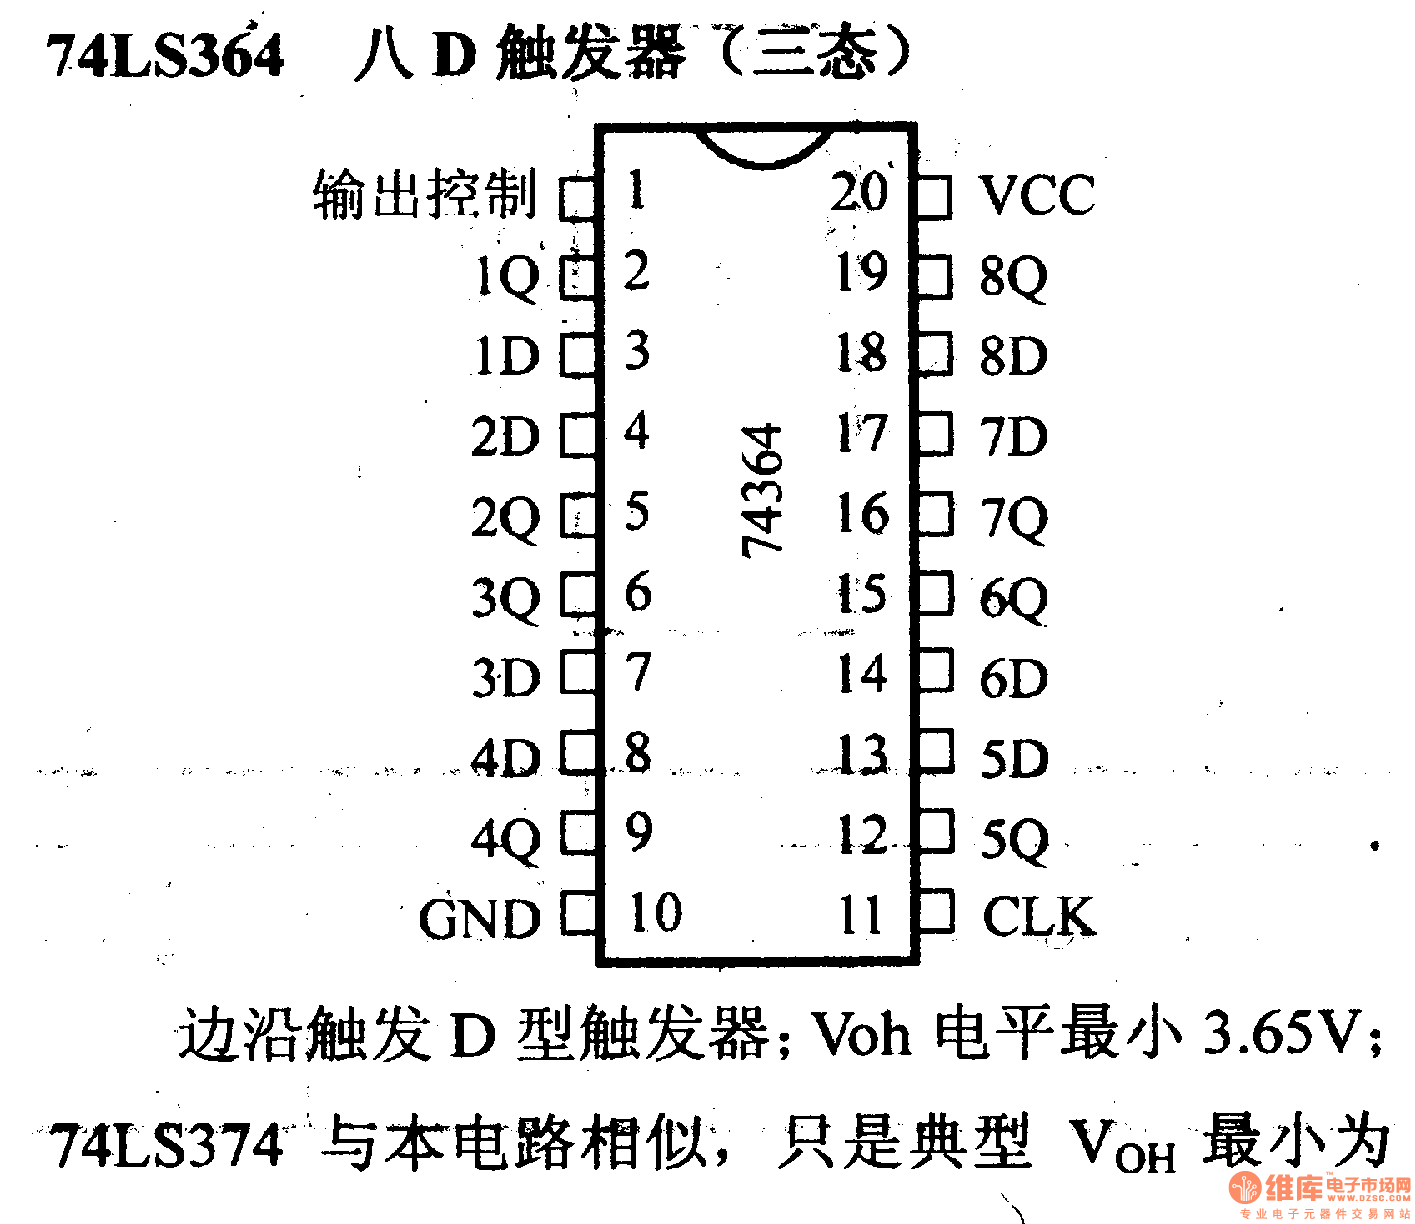 74系列数字电路74ls364八d触发器(三态)